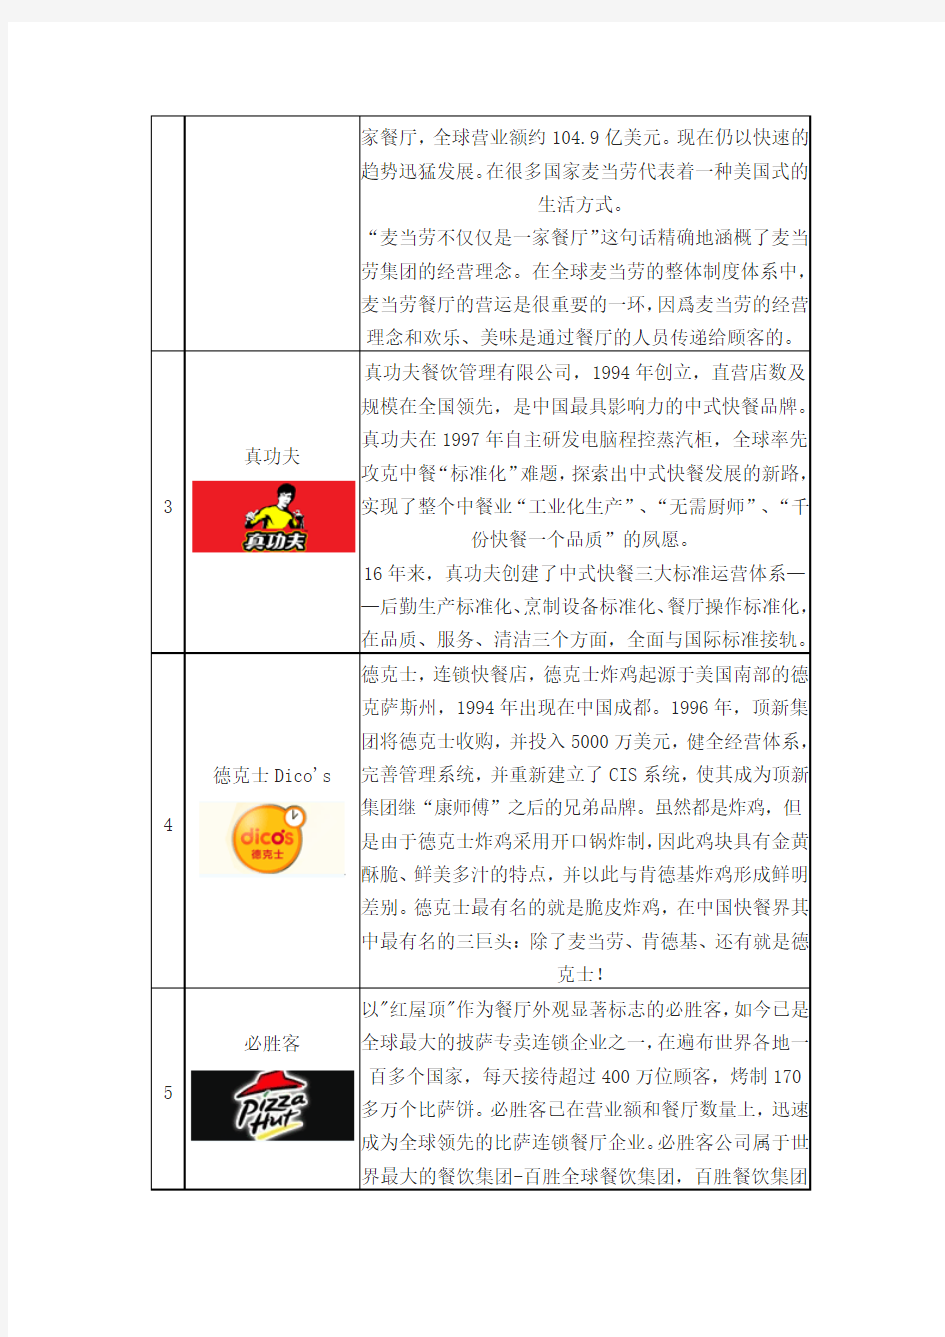 2014年中国快餐连锁十大品牌企业排名